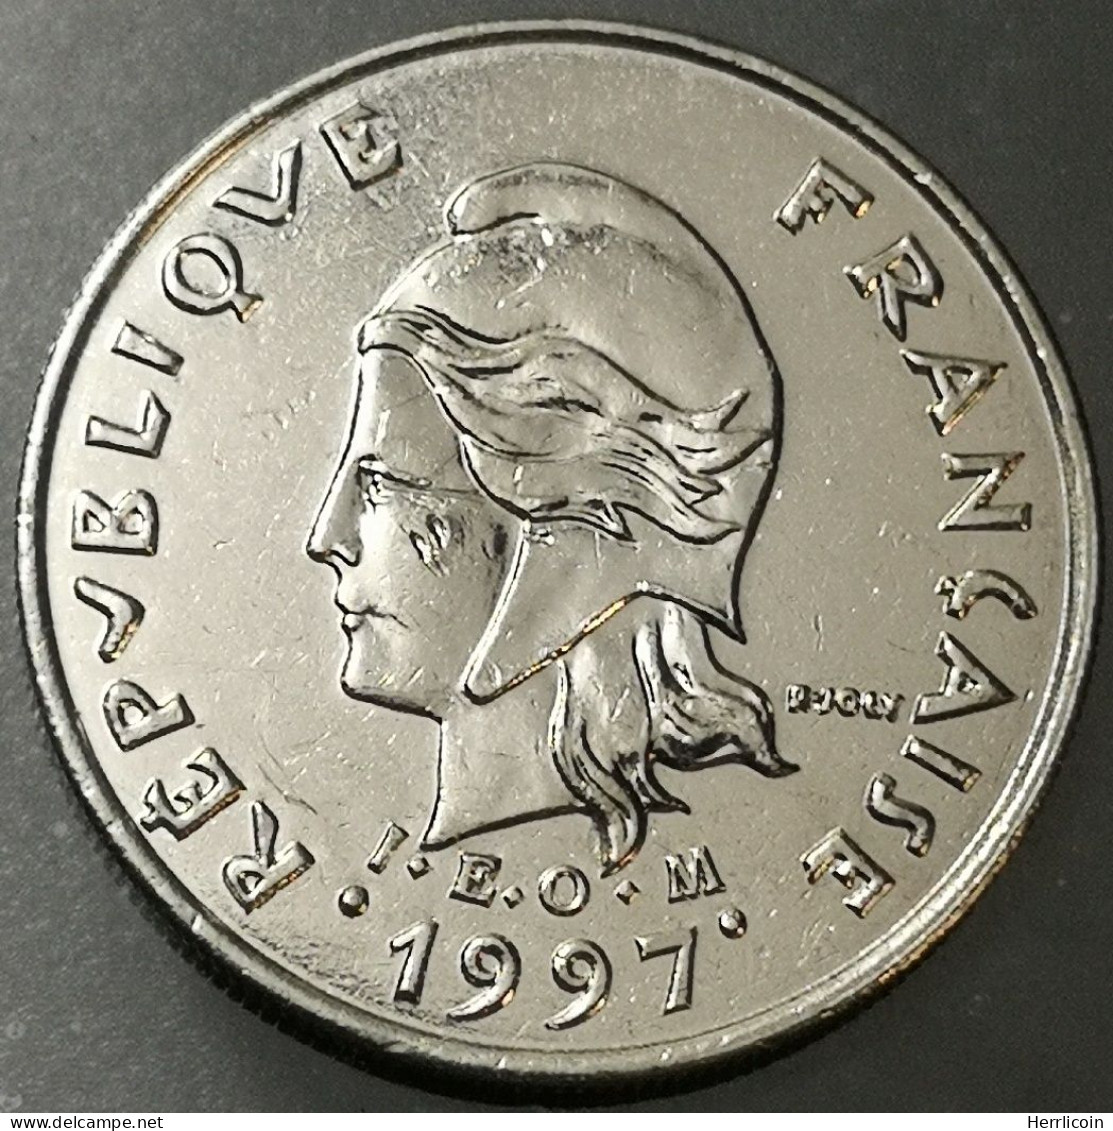 Monnaie Polynésie Française - 1997  - 10 Francs IEOM - Polinesia Francesa